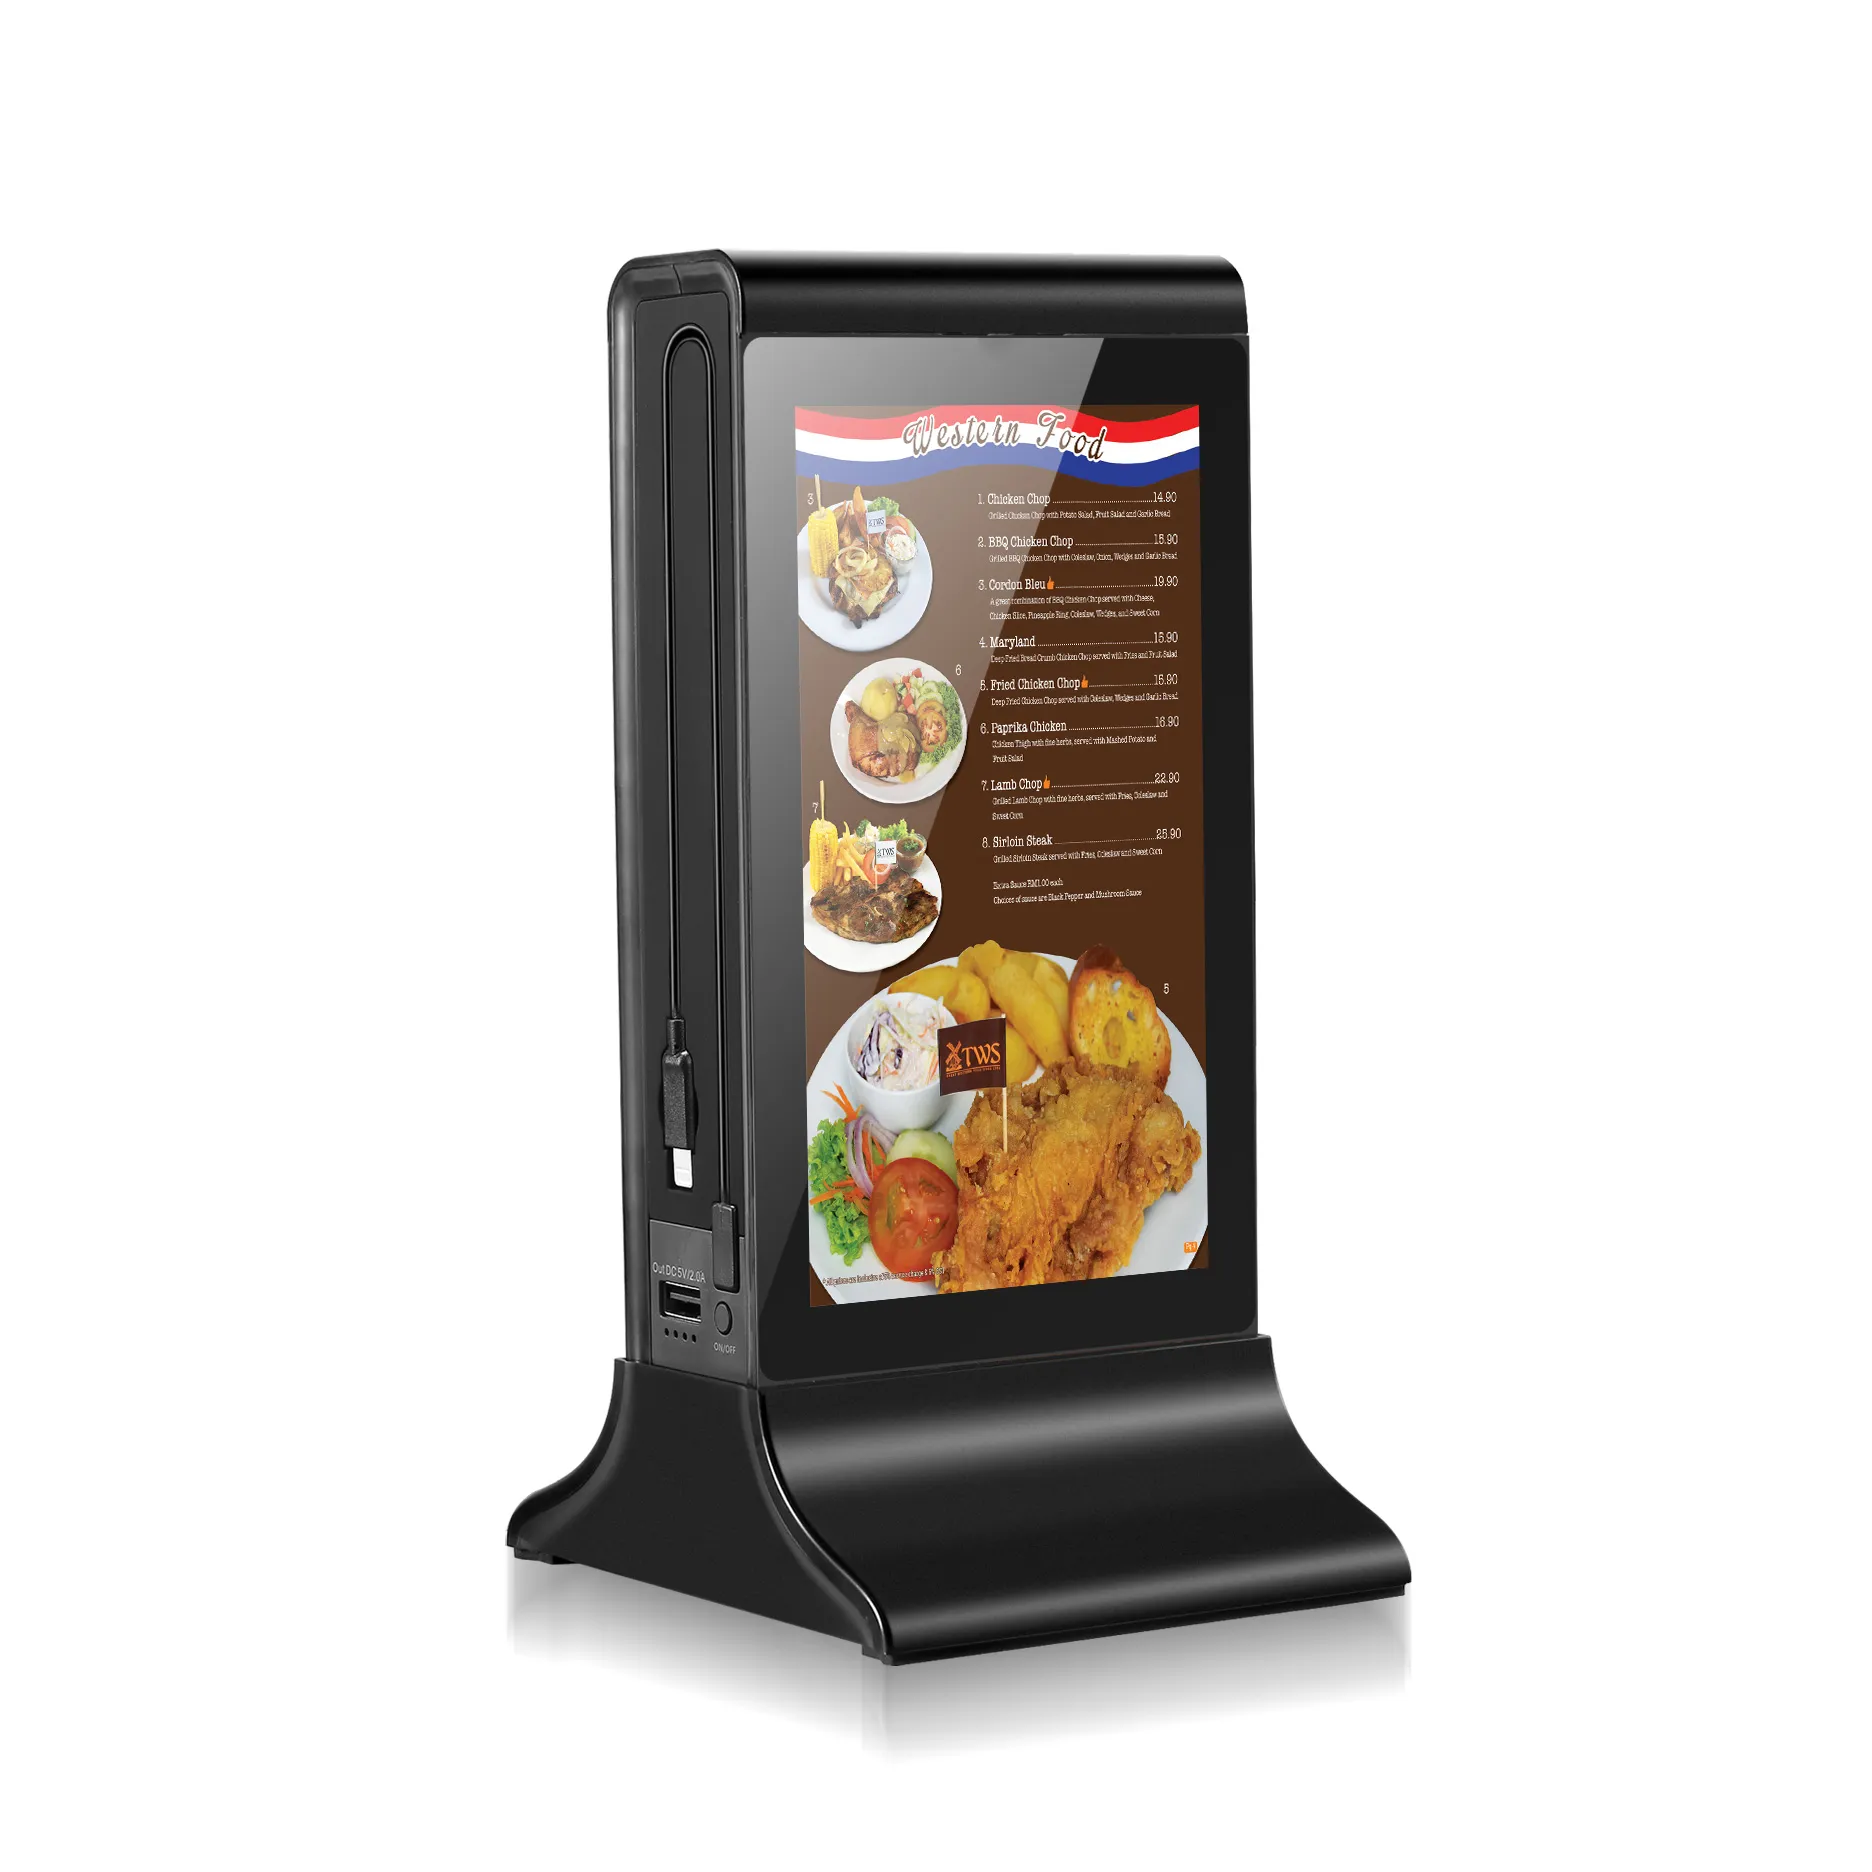 เครื่องเล่นโฆษณาหน้าจอสัมผัส LCD ขนาด7นิ้วสำหรับติดบนโต๊ะบาร์ร้านอาหาร FYD-835S